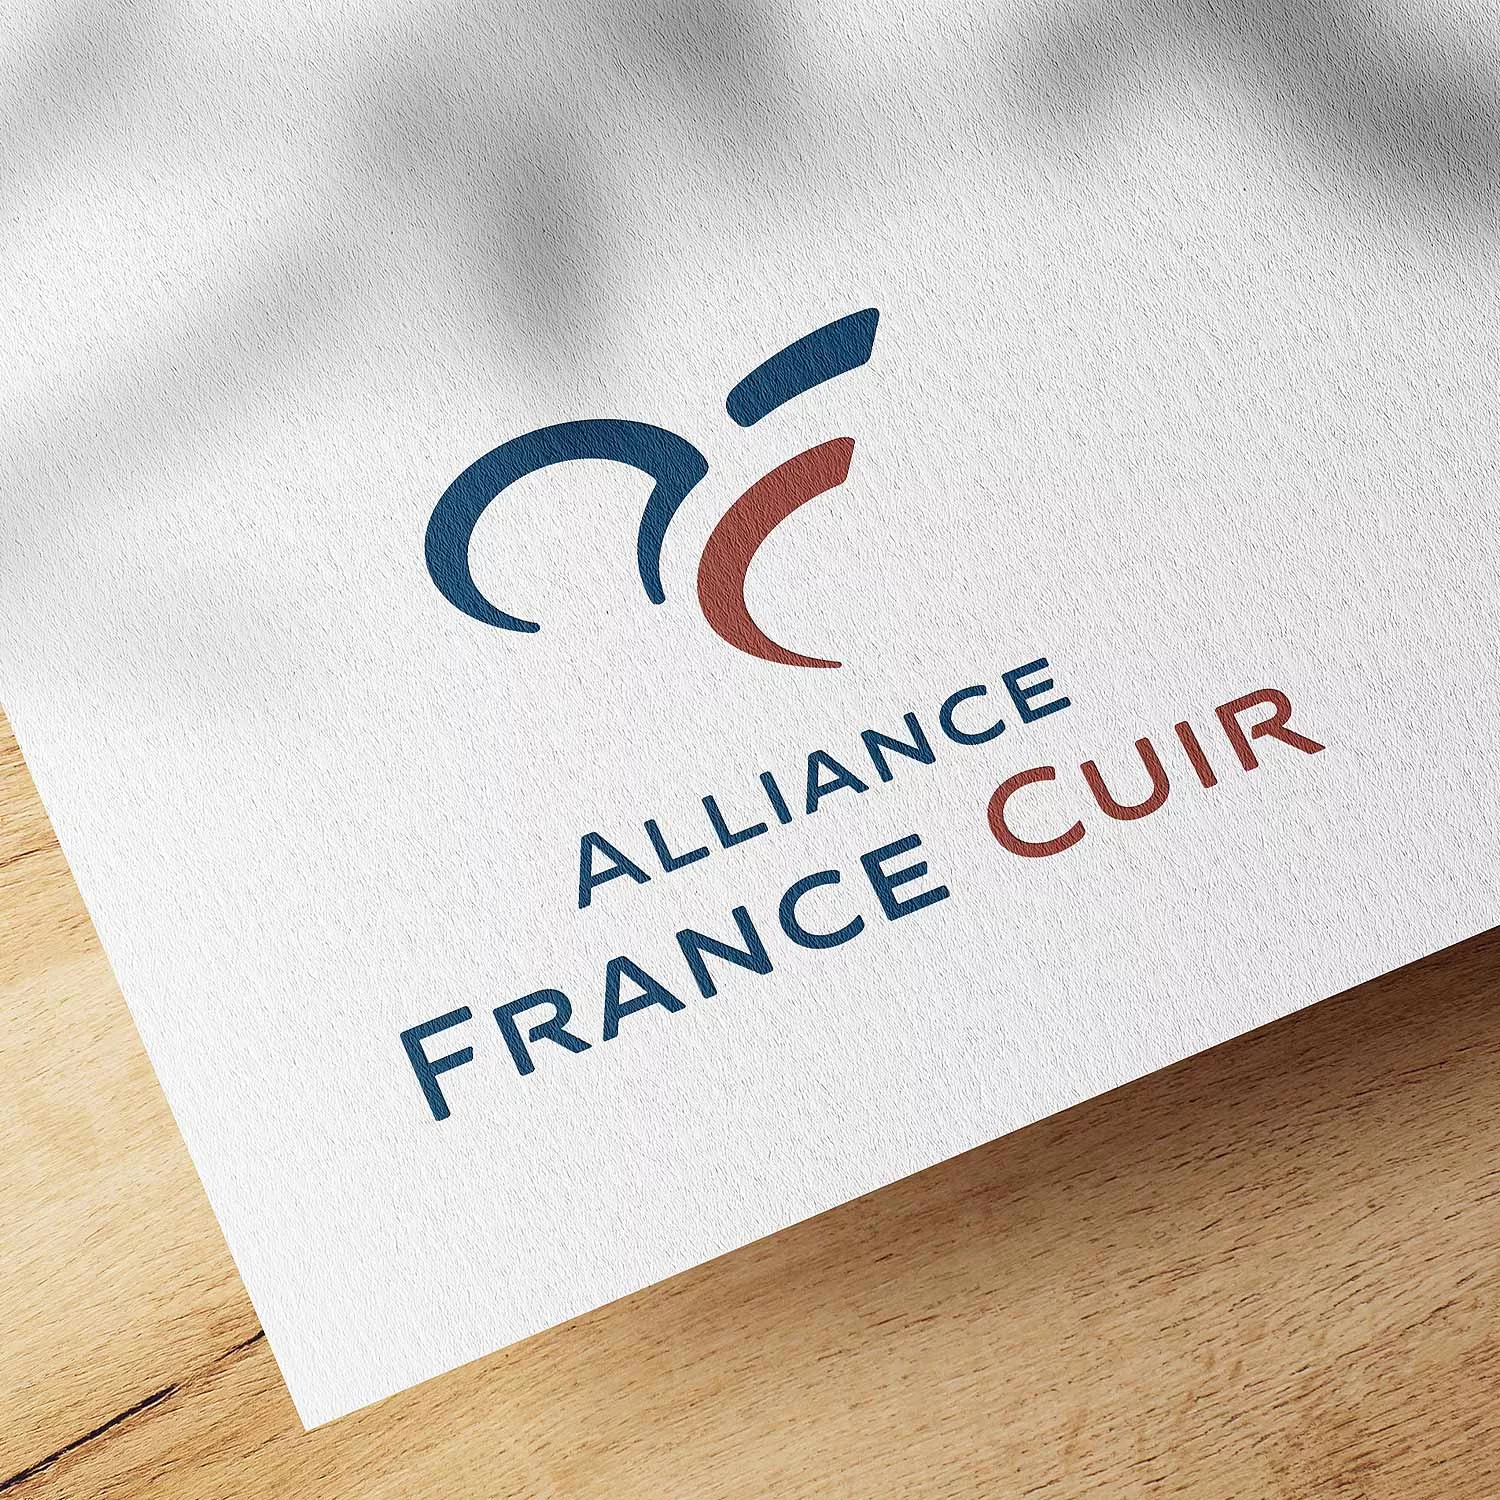 Logo Alliance France Cuir